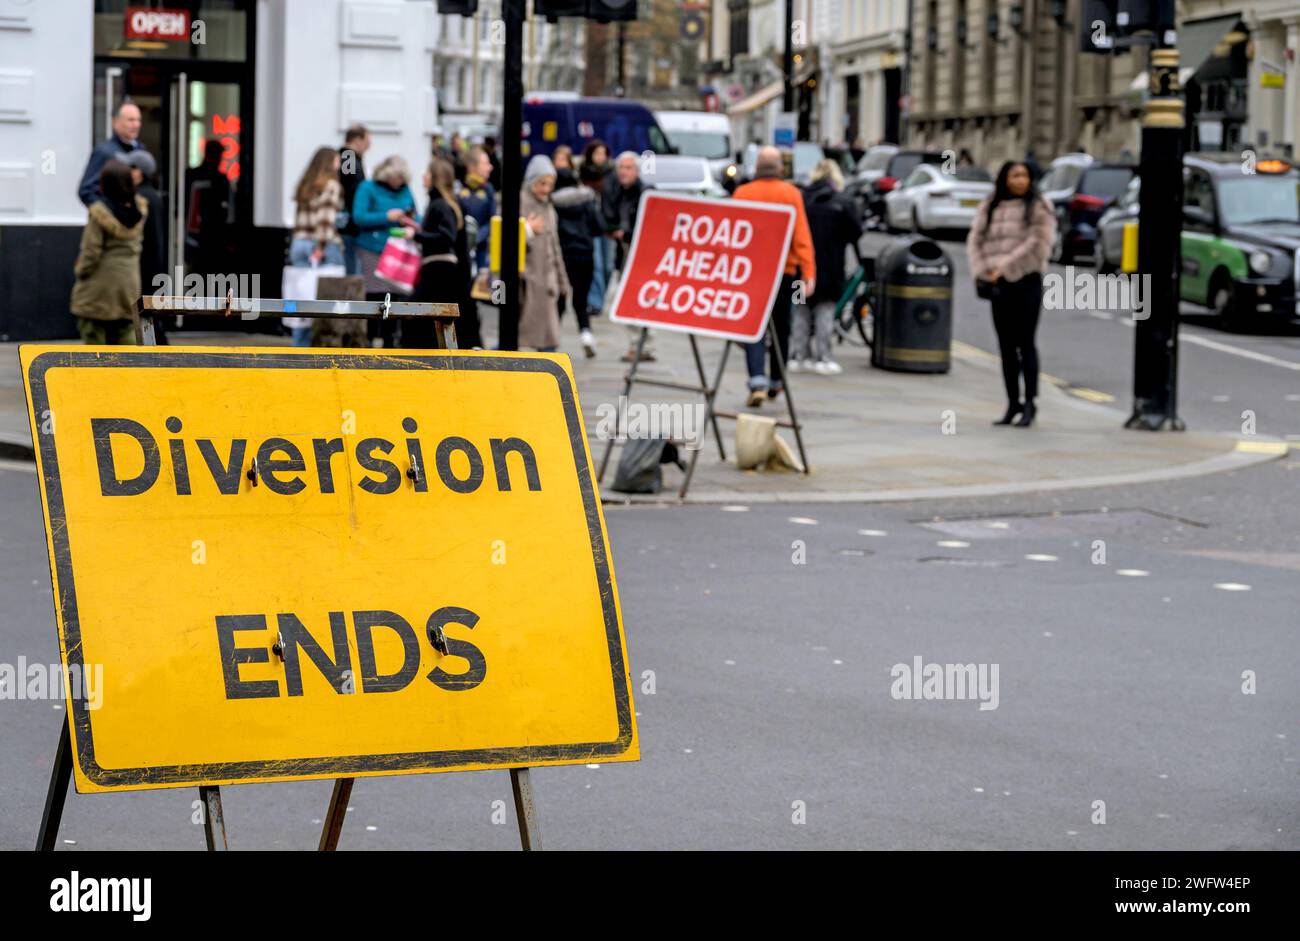 Londra, Regno Unito. Le indicazioni per "Diversion End" e "Road Ahead CLOSED" a Covent Garden Foto Stock